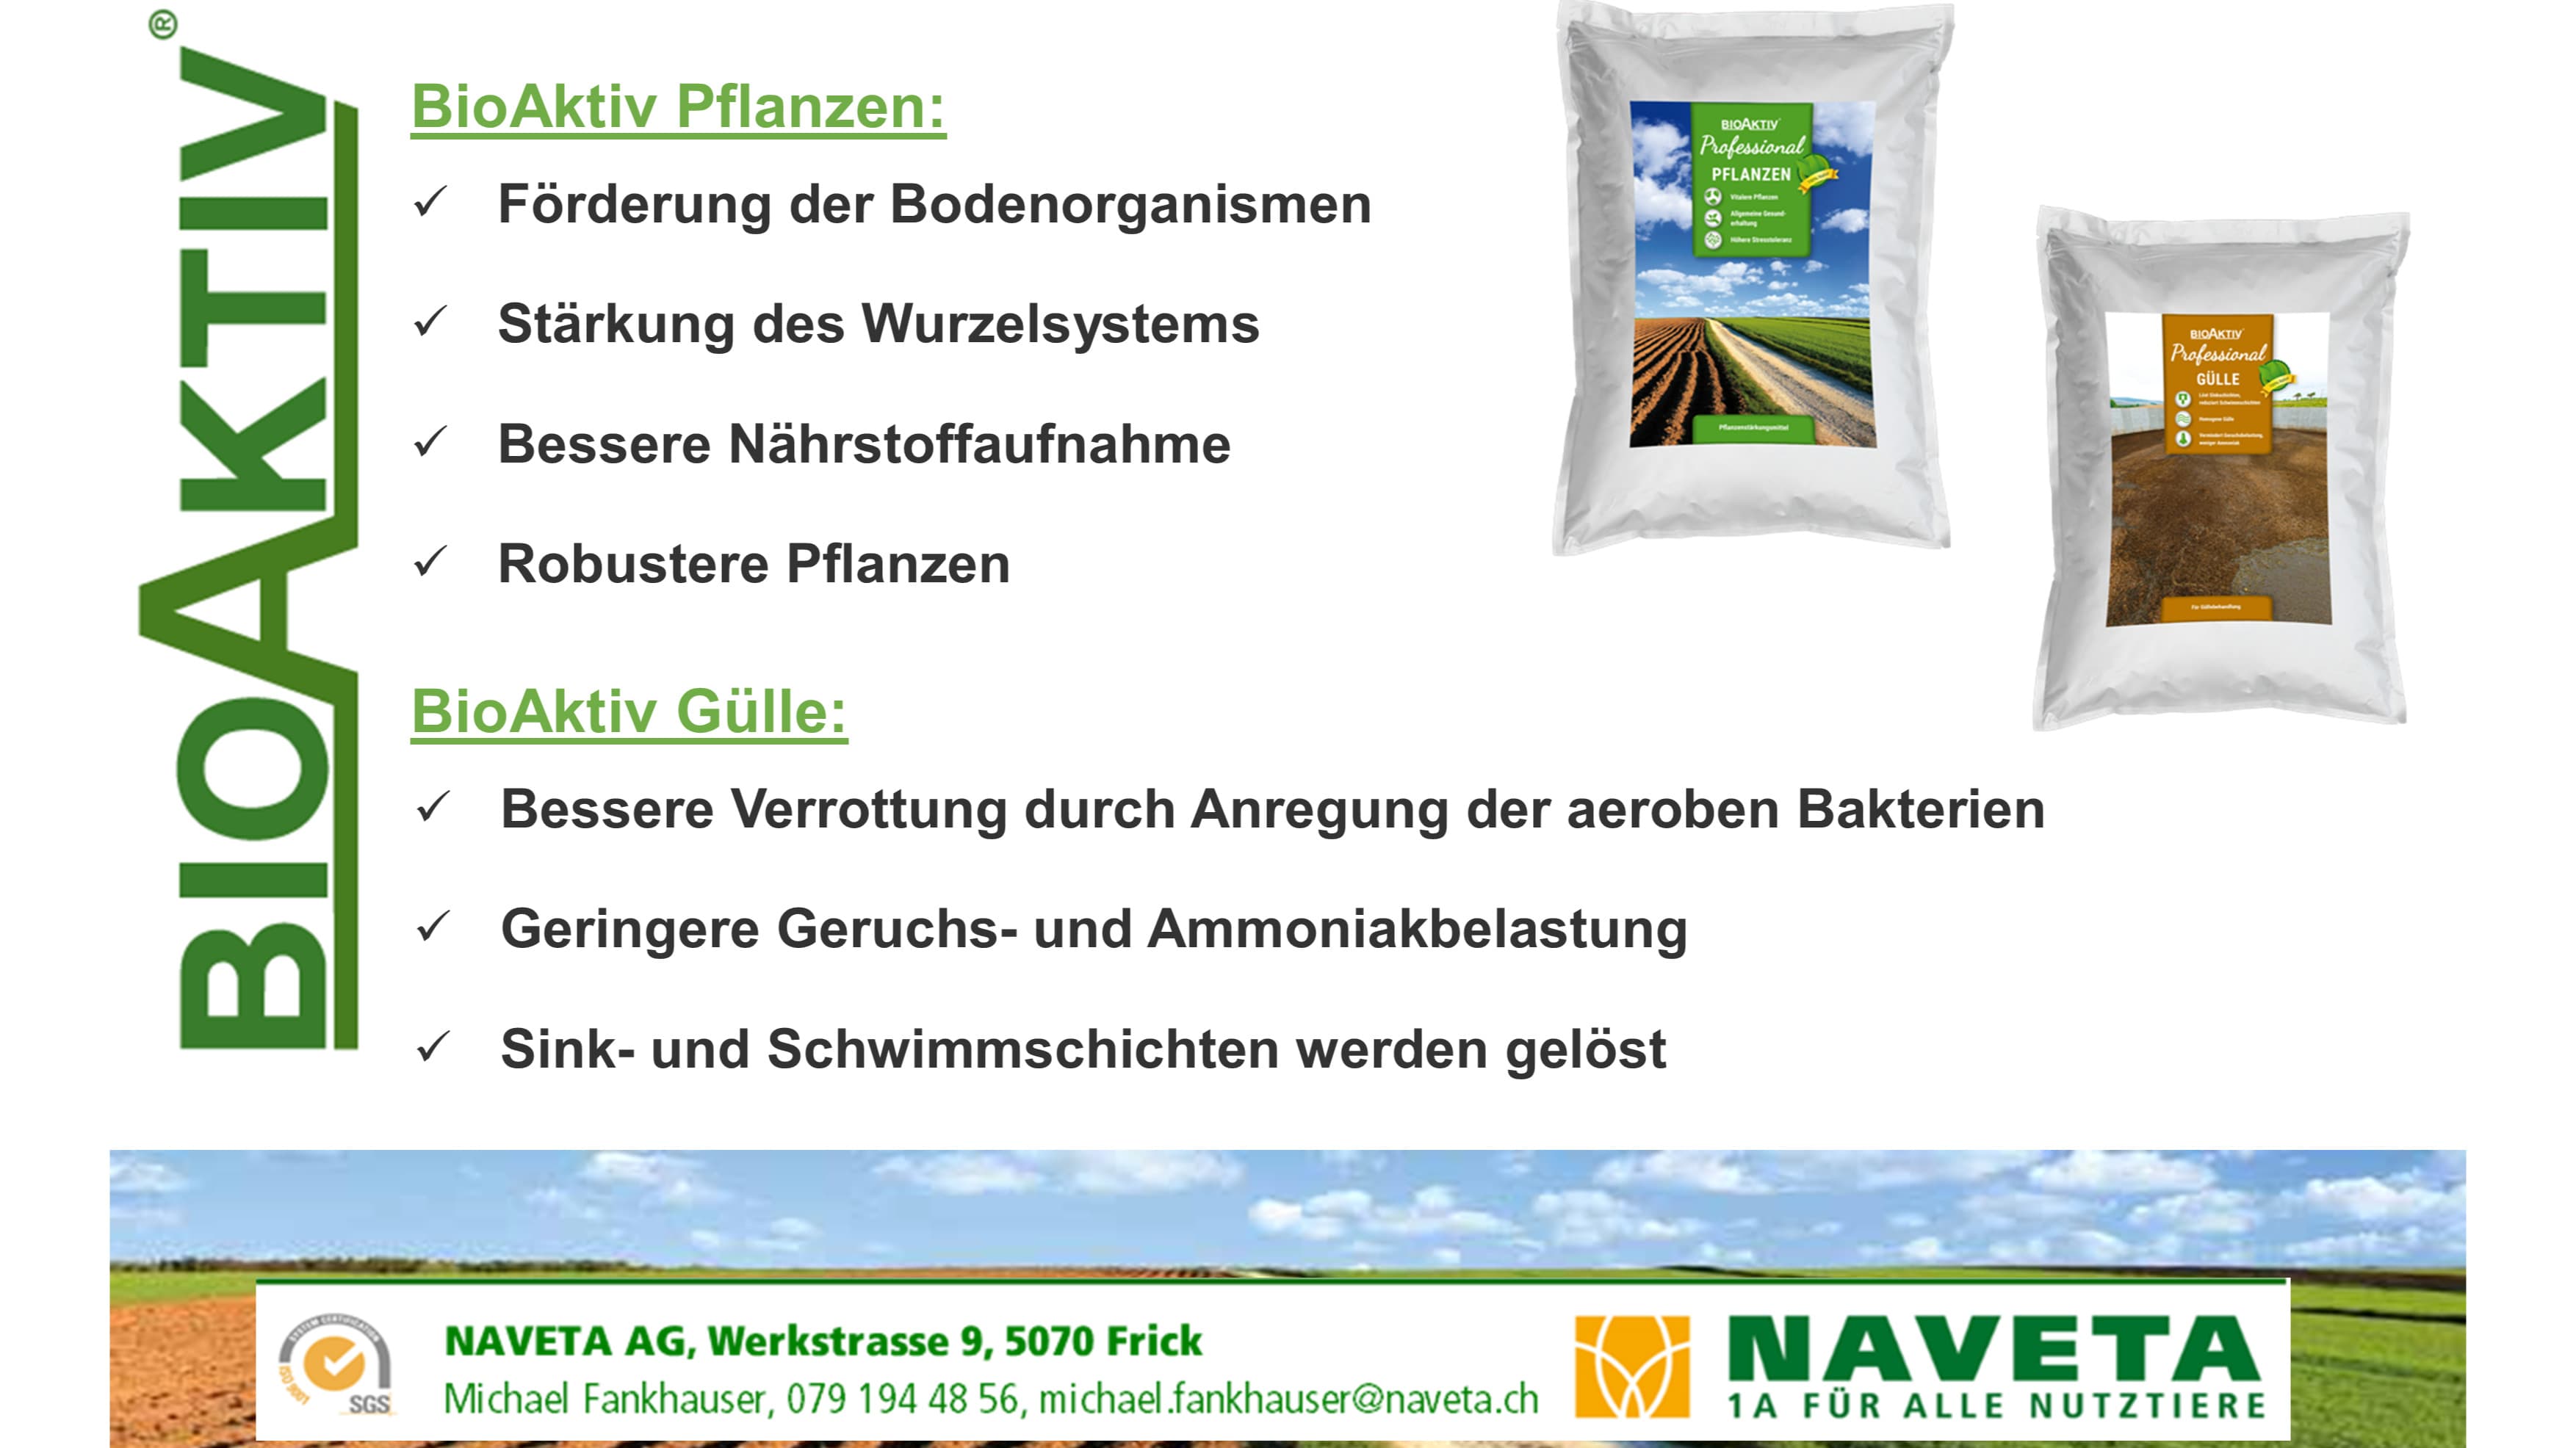 BioAktiv Gülle & Pflanzen - Reduziert die Emissionen und fördert die aeroben Bakterien.